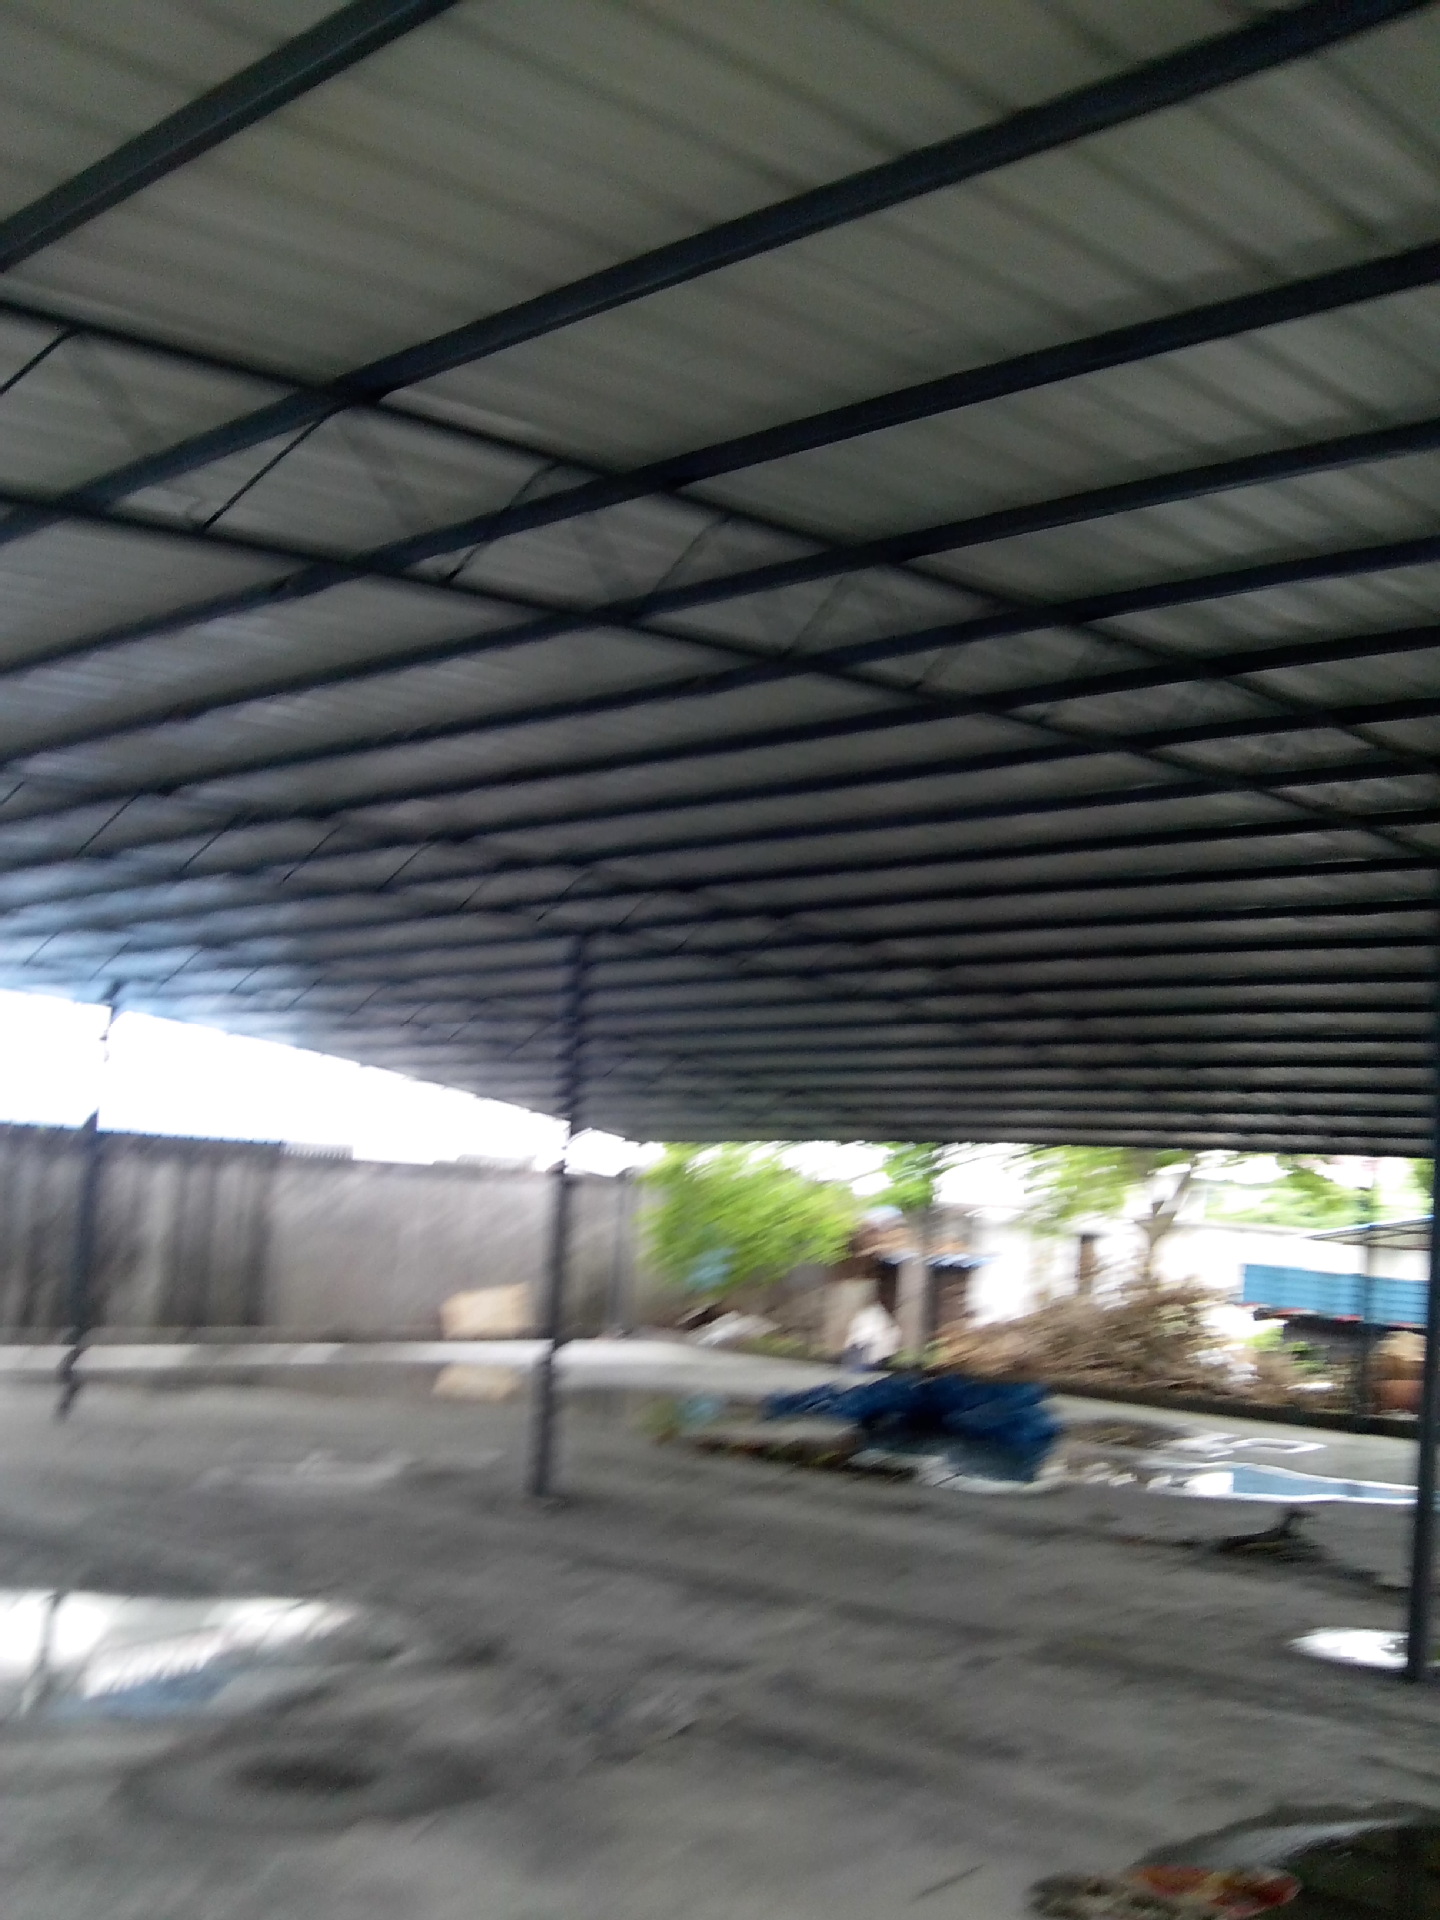 成都专业搭建轻钢结构彩钢瓦雨棚-阿里巴巴